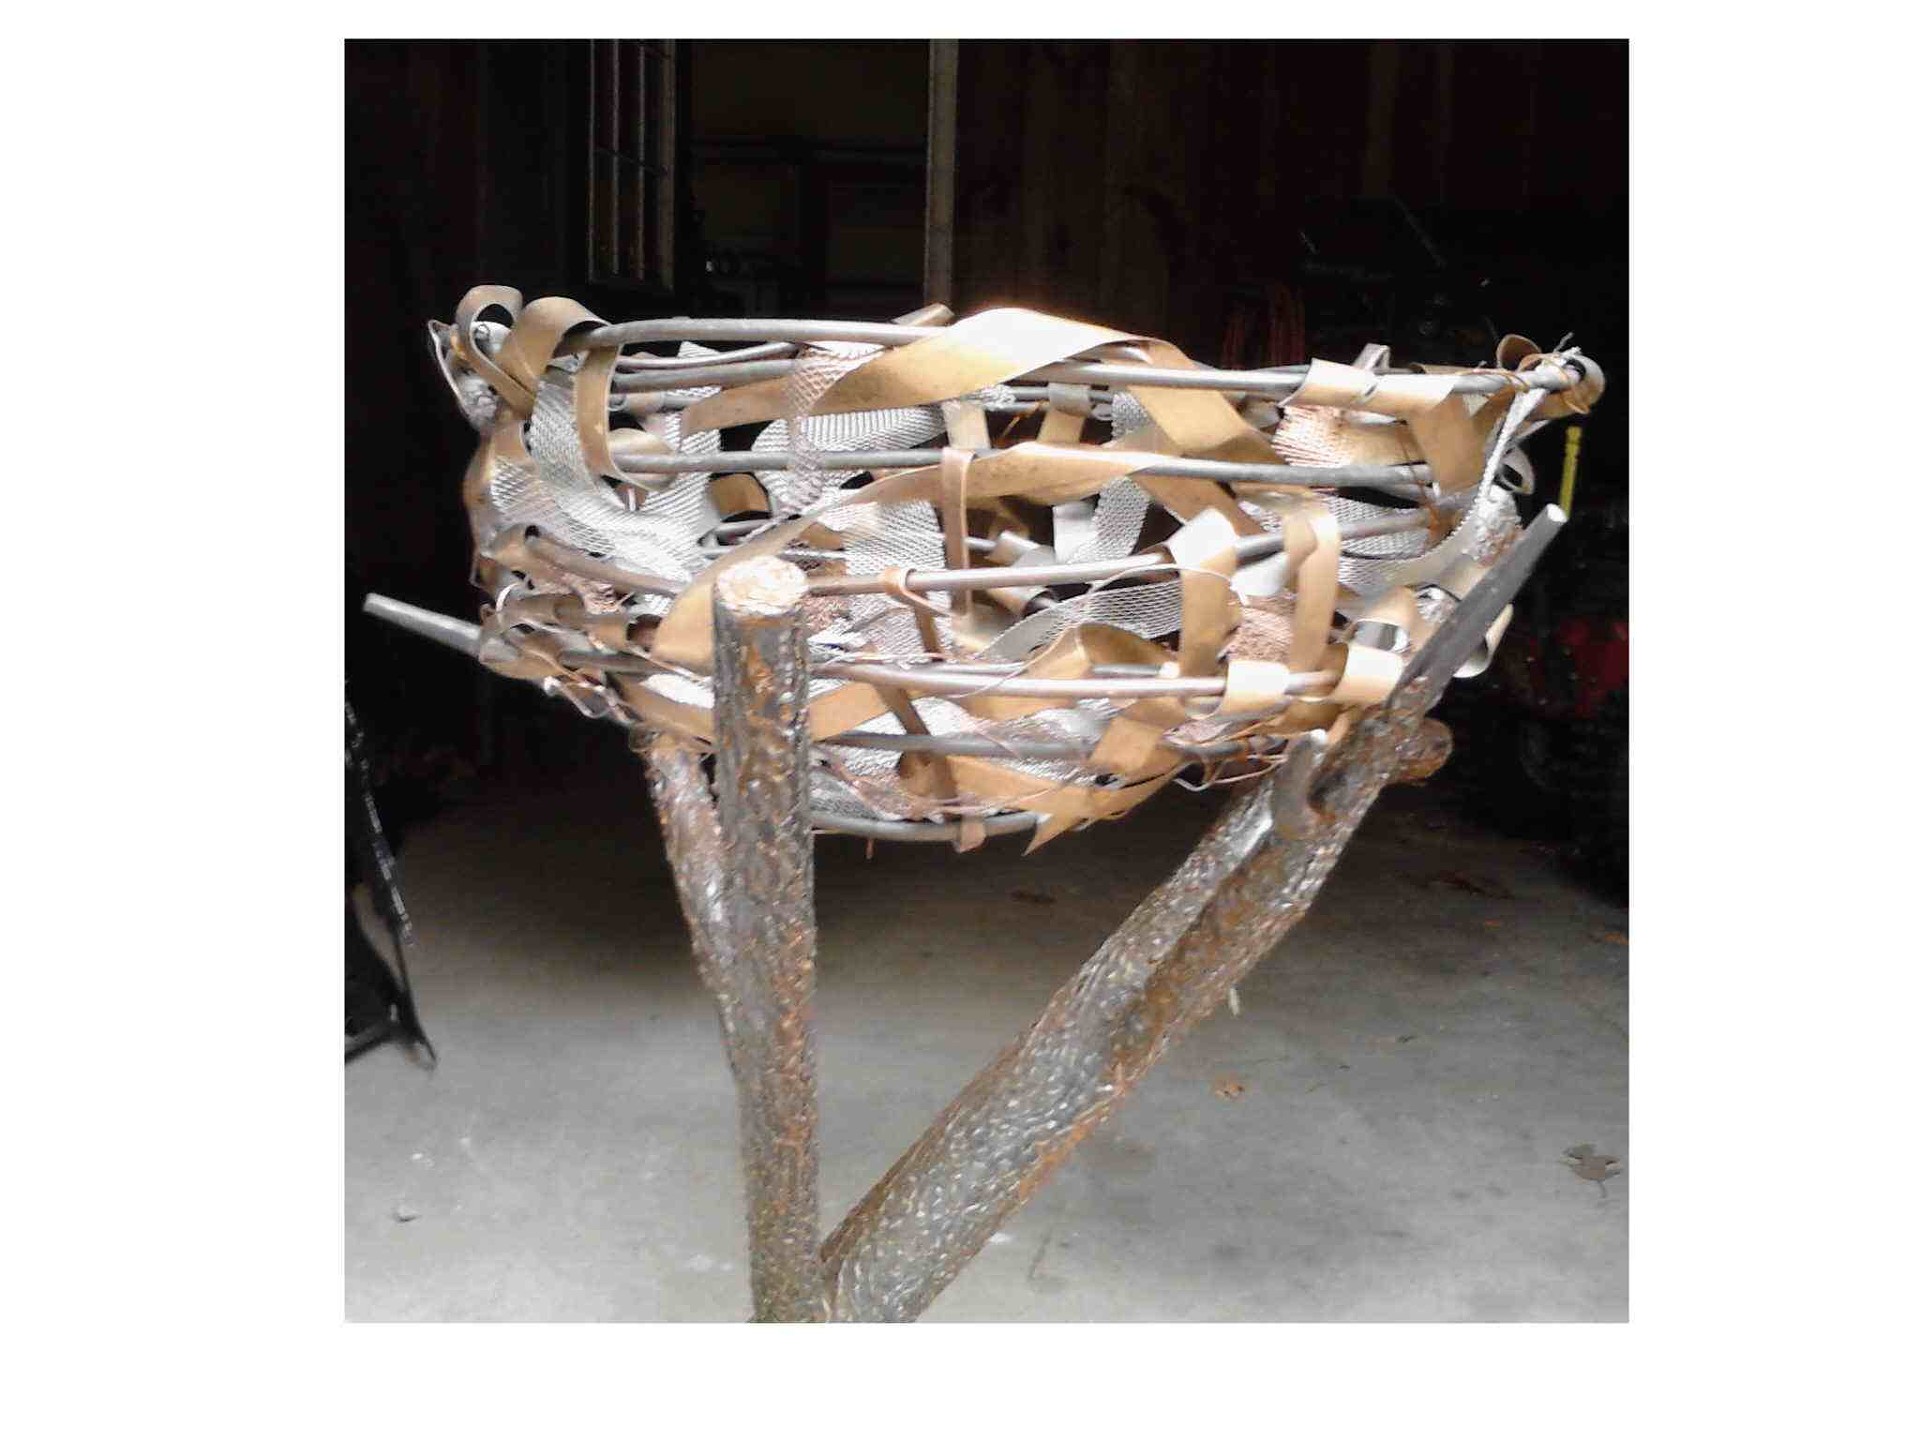 Bird's nest sculpture by Payne Junker